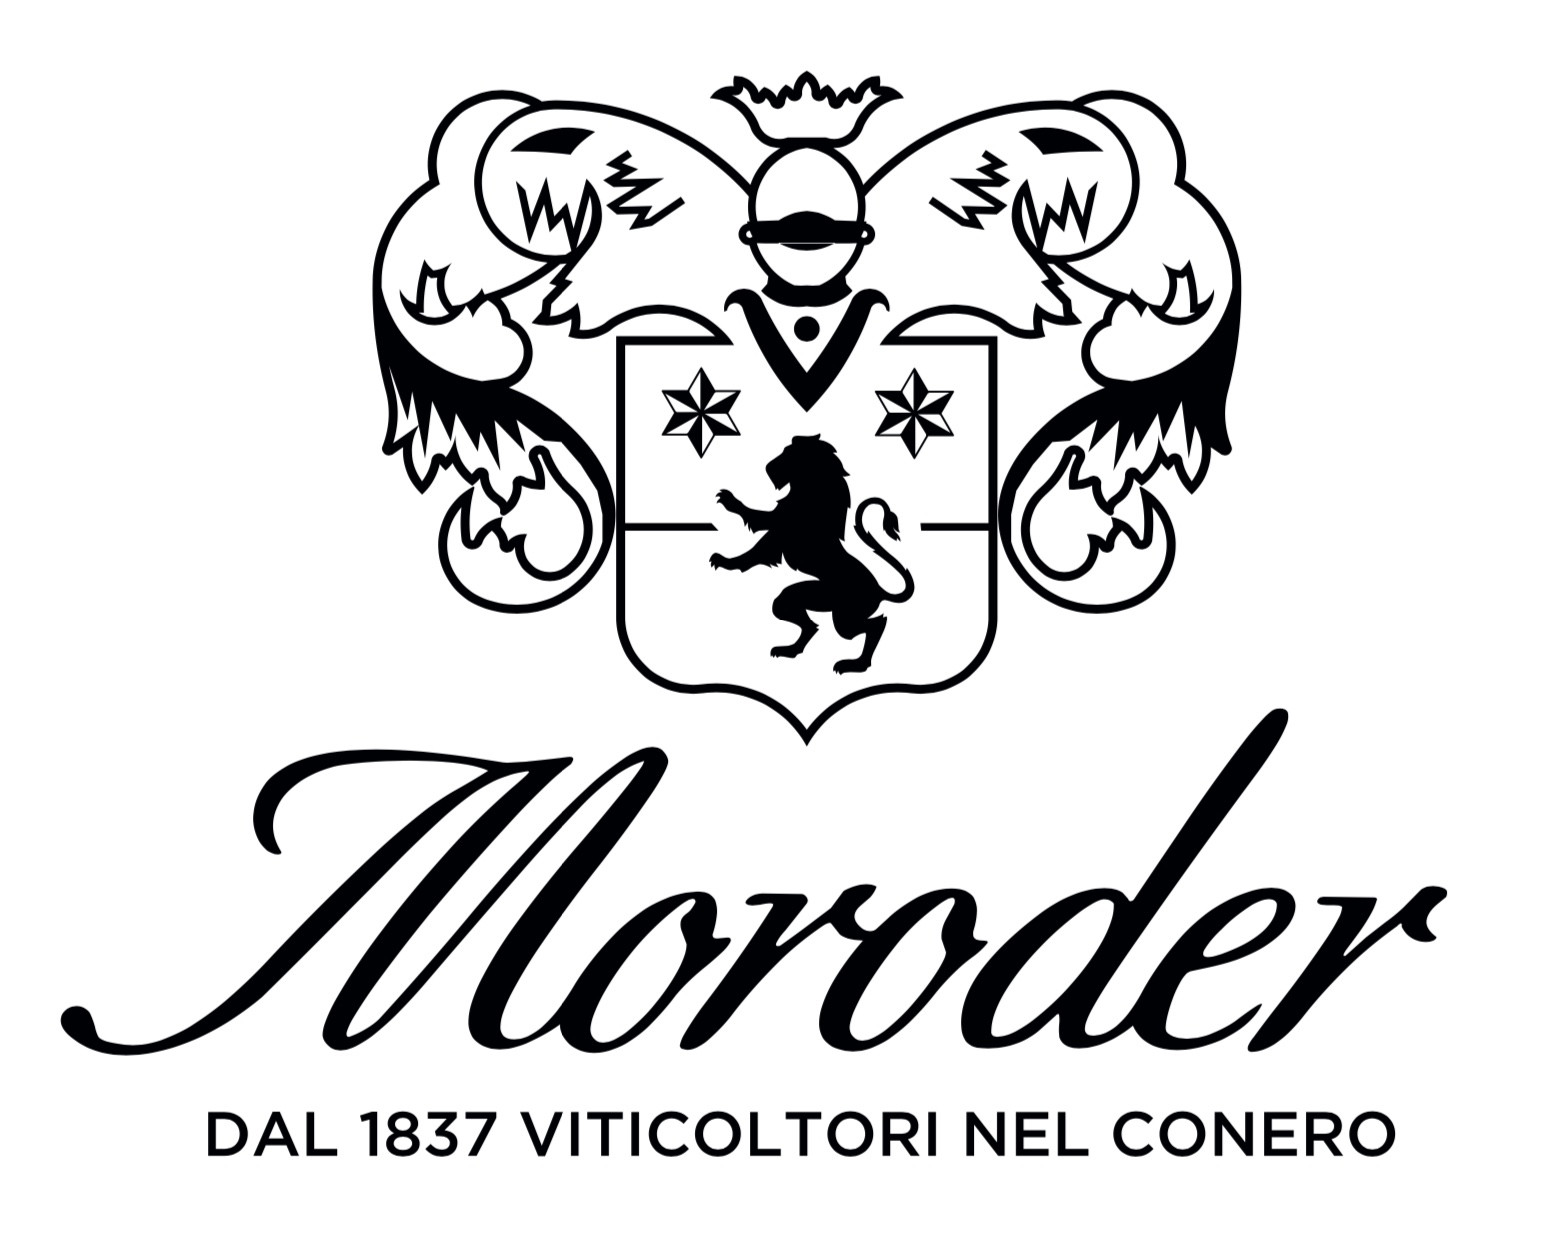 Moroder